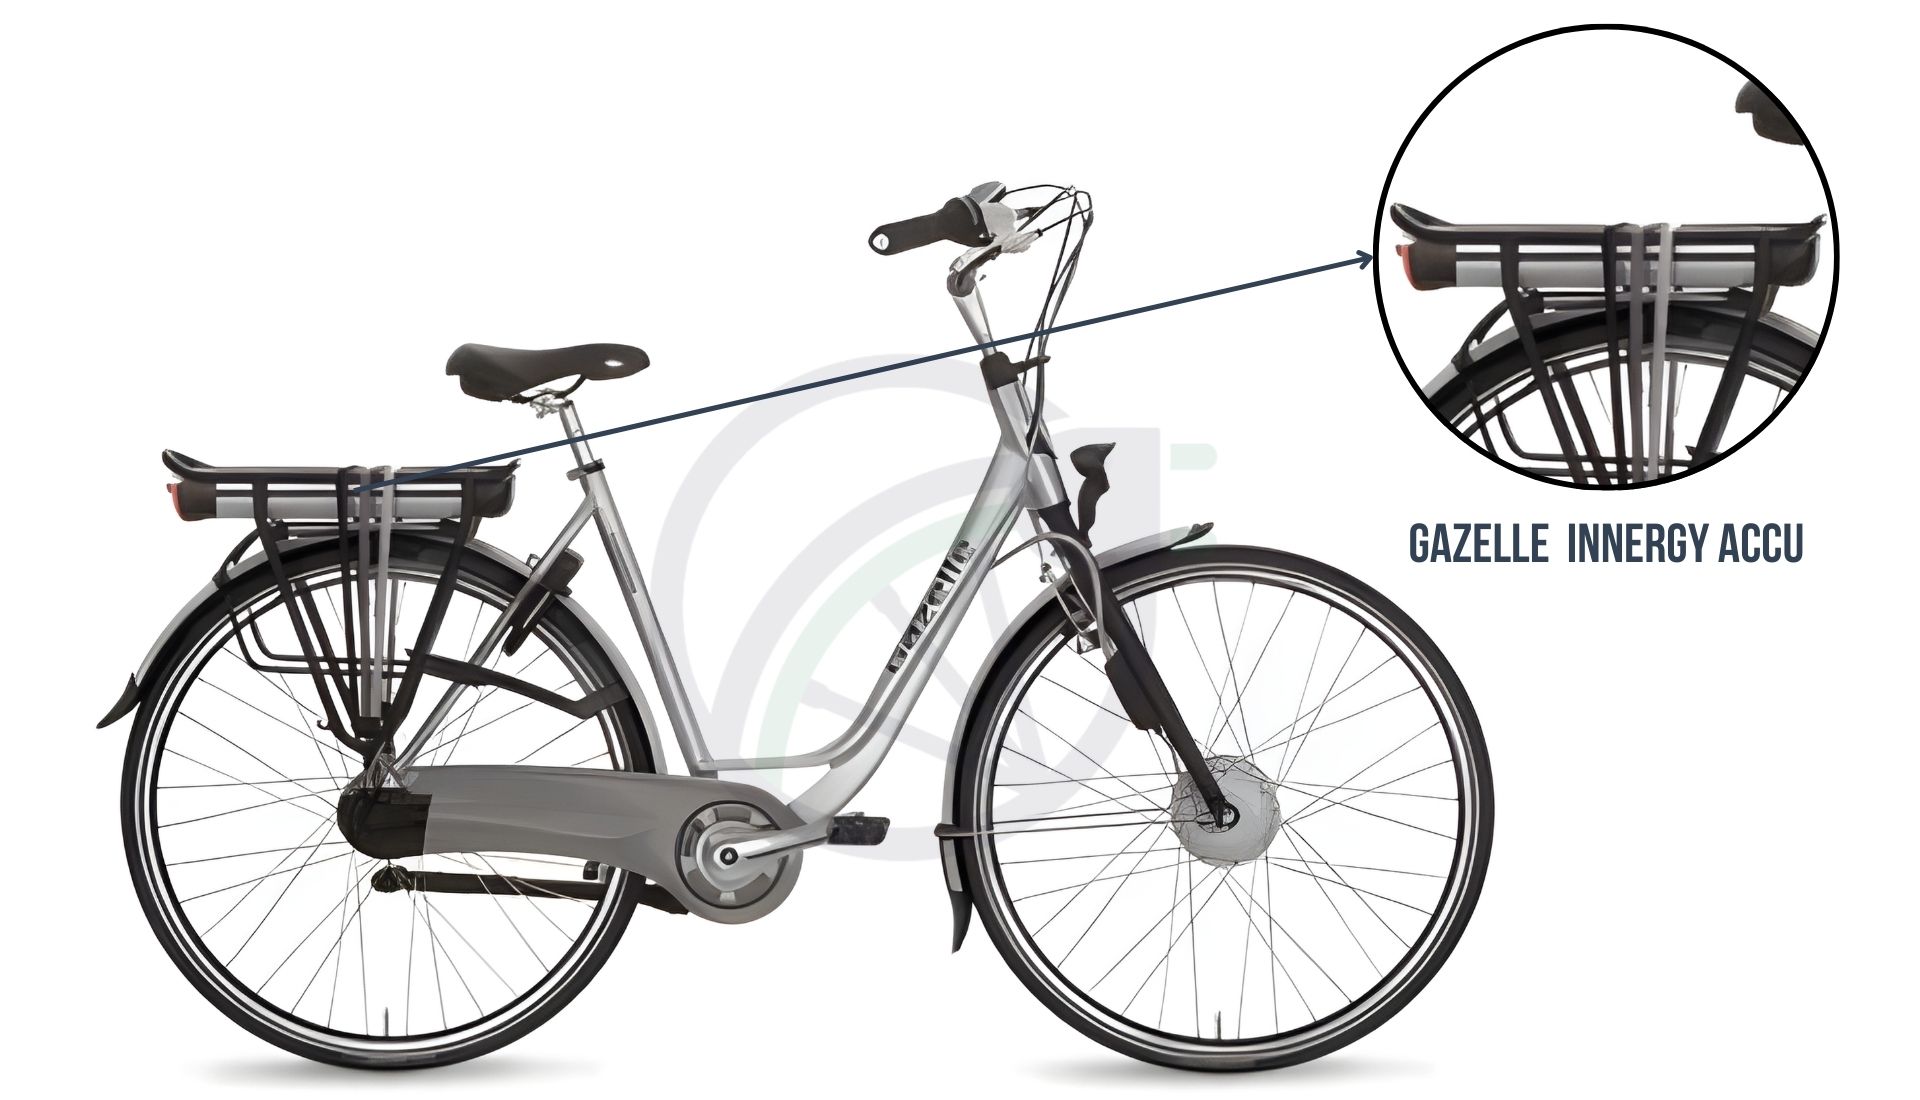 Gazelle elektrische fiets, met daarbij uitgelicht welke accu er in deze elektrische fiets zit. In dit geval is dit de Gazelle Innergy accu. Hierbij je de keuze uit de Gazele Innergy Gold accu, en Gazelle Innergy Zilver accu.